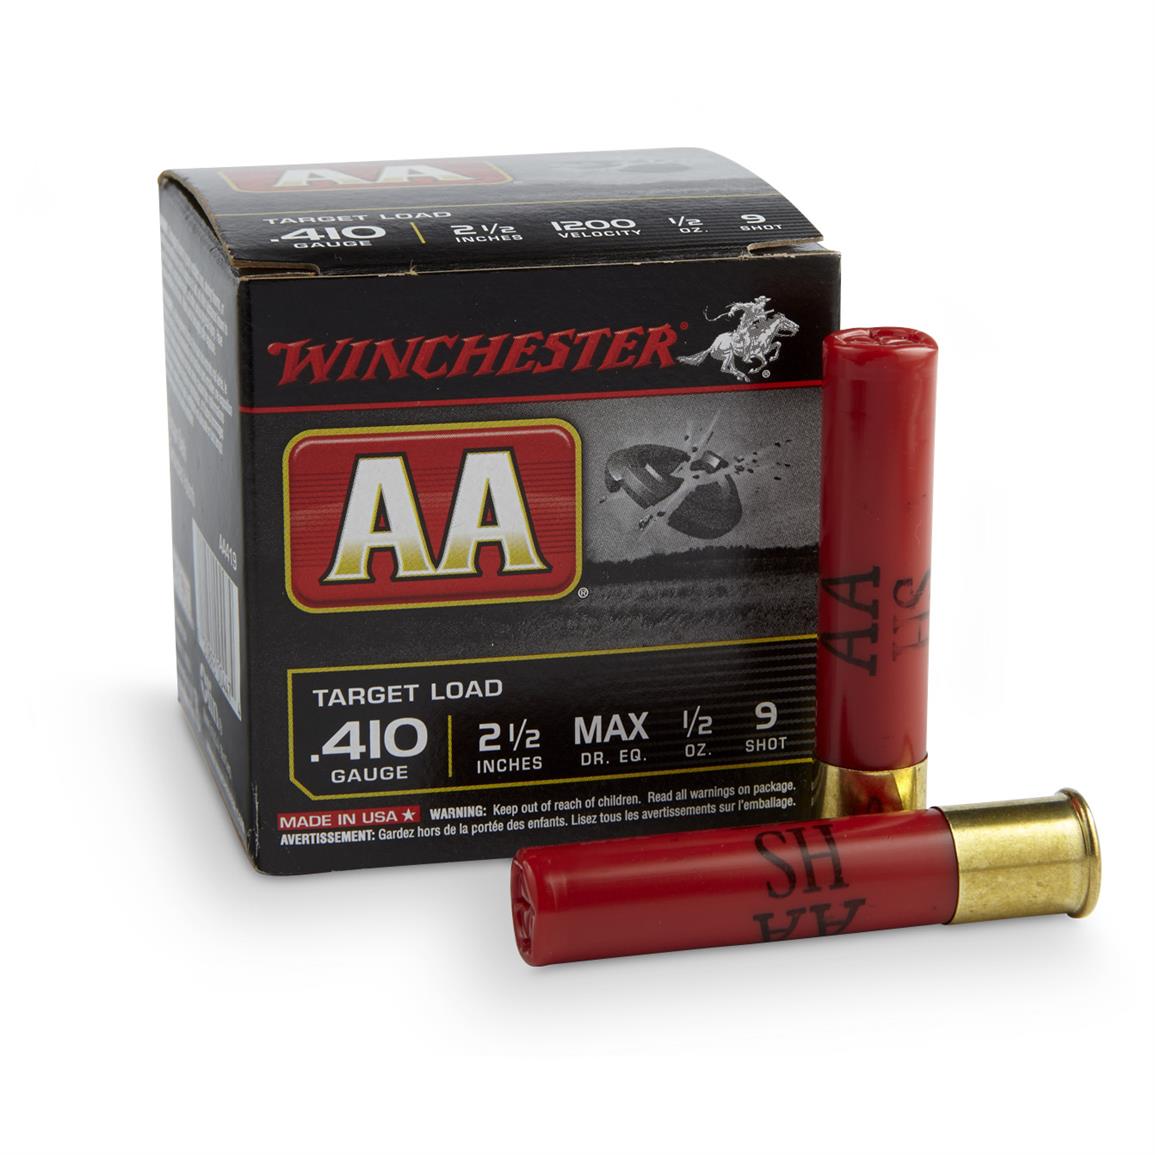 Winchester 9 AA Shotshells 410 Gauge 2 1 2 Max Shell 1 2 Oz 